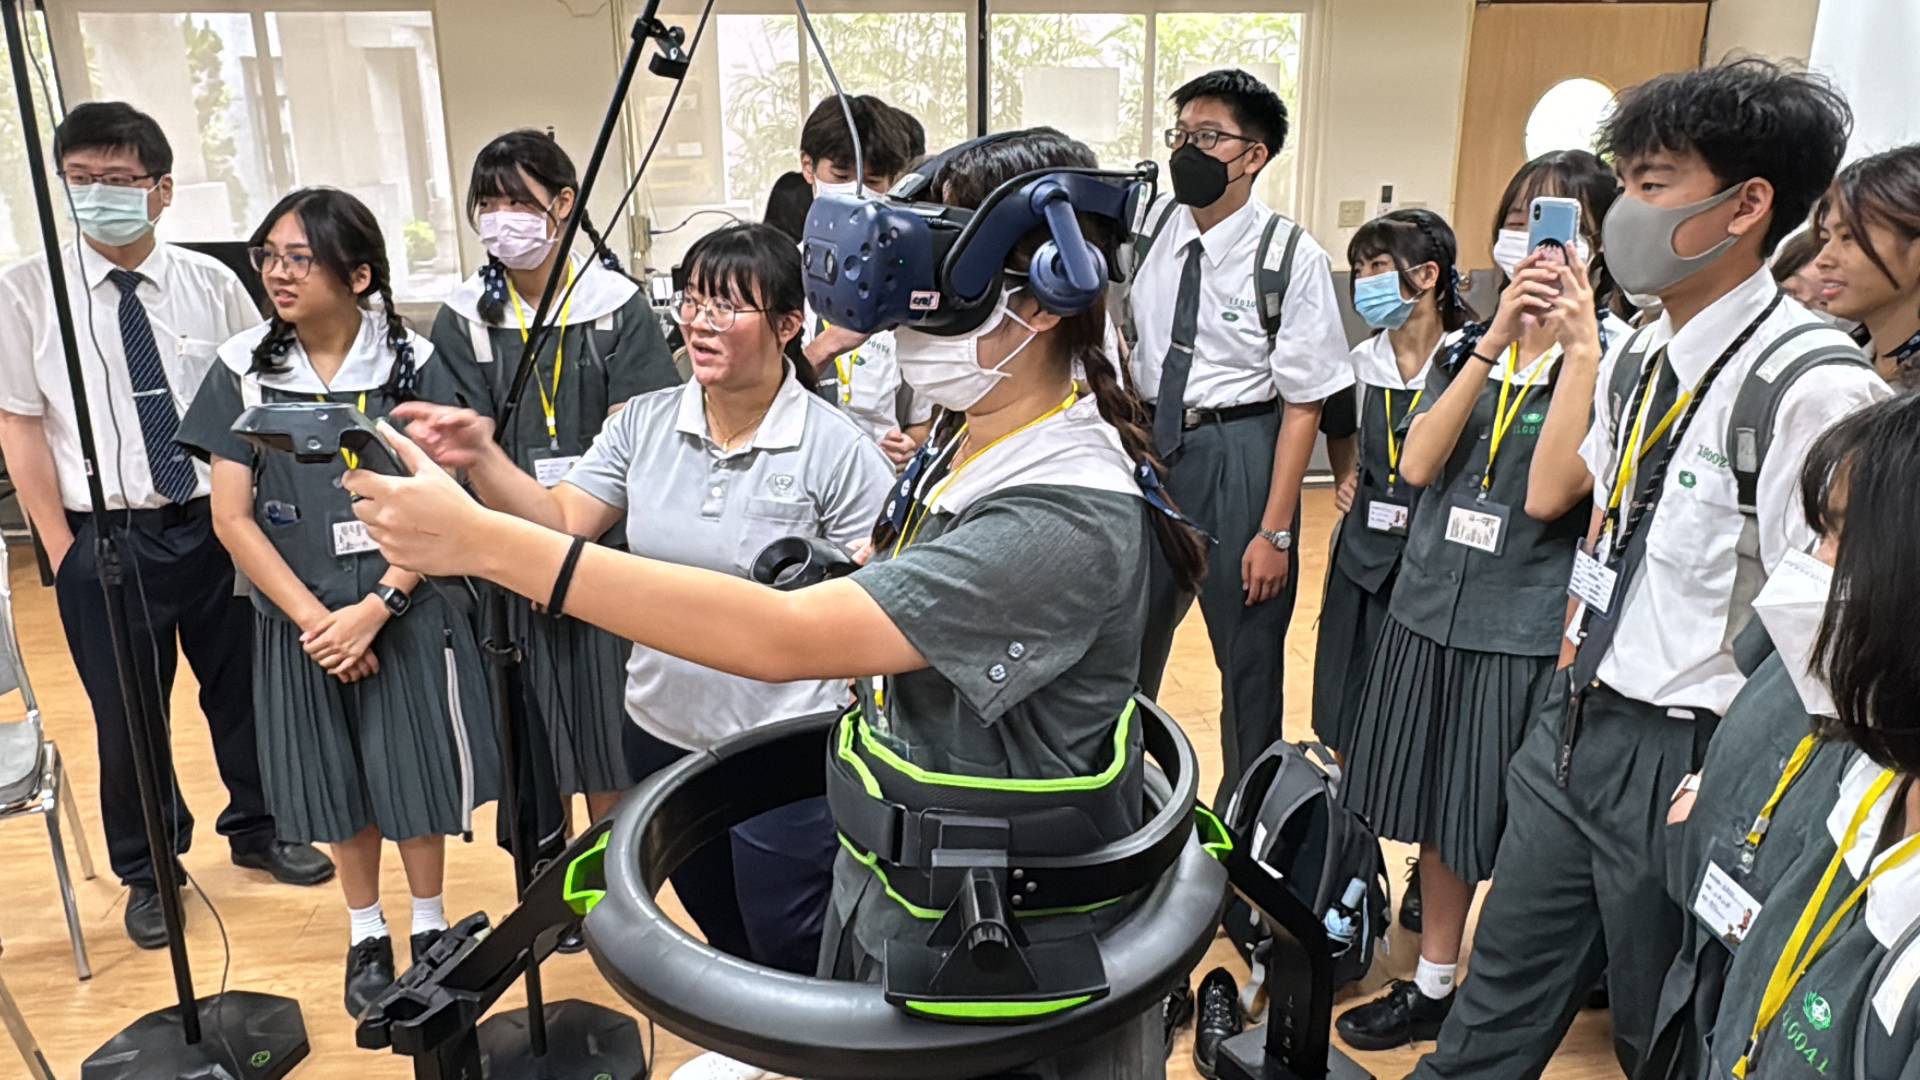 身歷其境的VR遊戲機讓同學對科技產業嘆為觀止